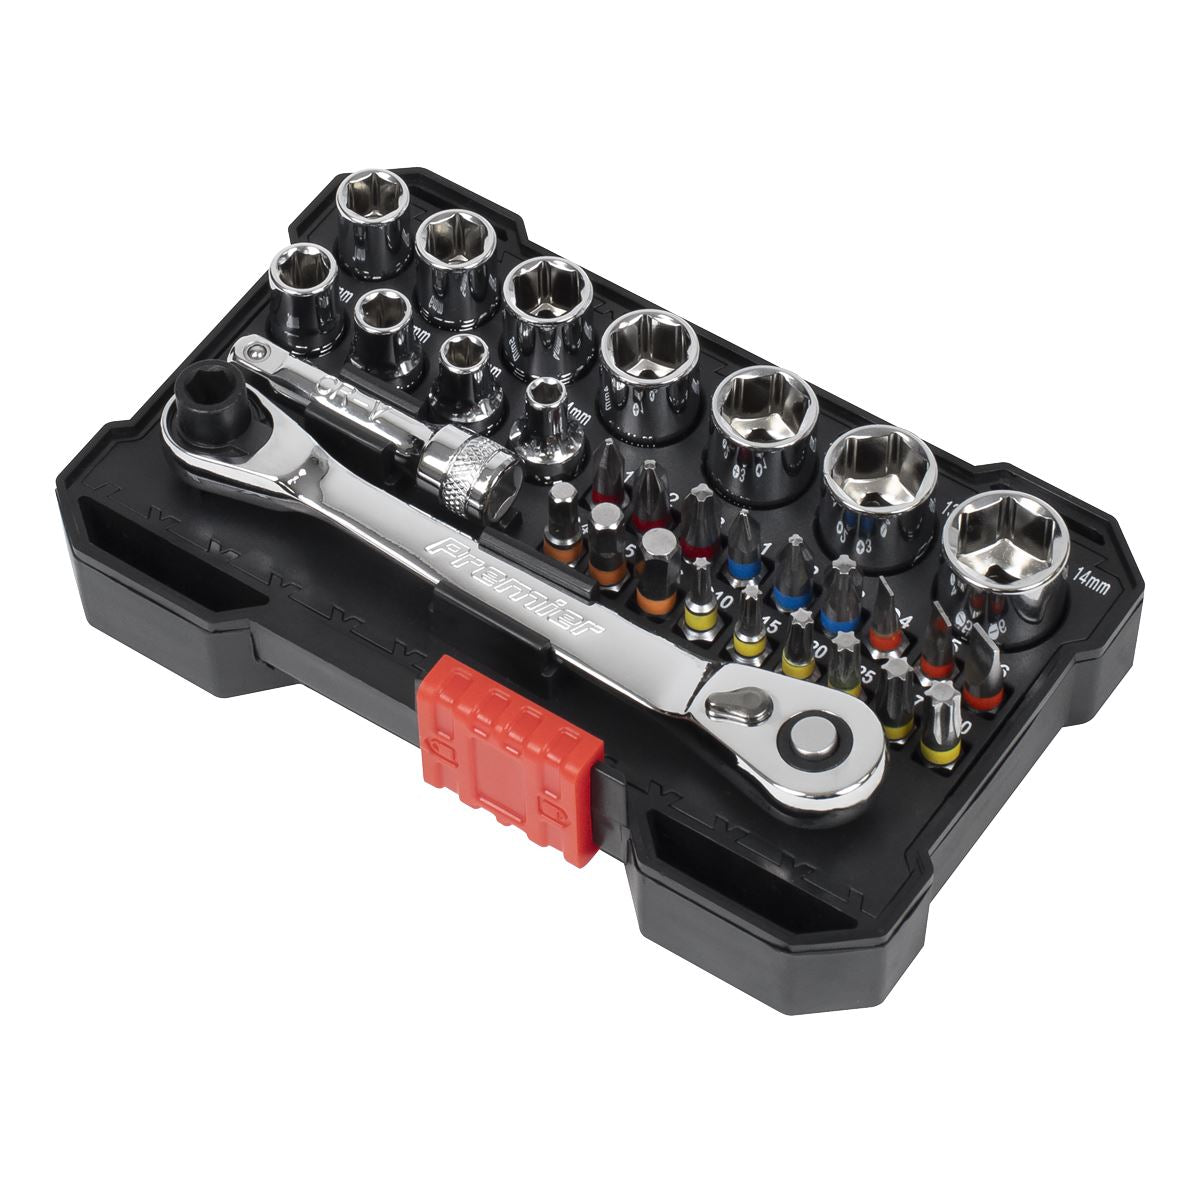 Sealey Premier Socket & Bit Set 1/4"Sq Drive Colour-Coded 31pc